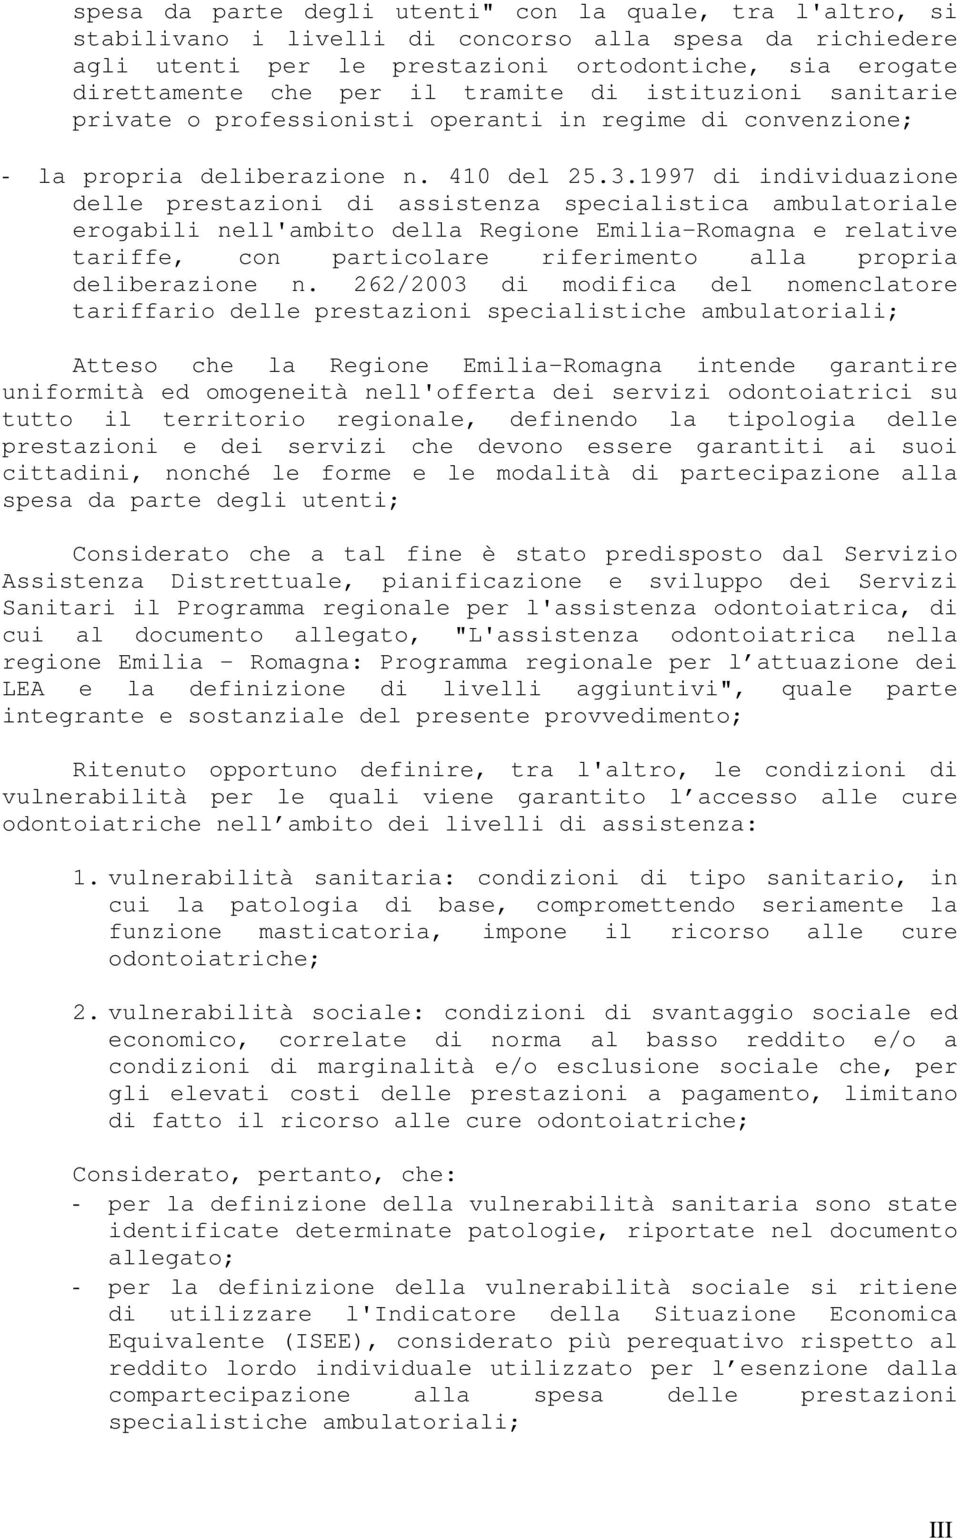 1997 di individuazione delle prestazioni di assistenza specialistica ambulatoriale erogabili nell'ambito della Regione Emilia-Romagna e relative tariffe, con particolare riferimento alla propria